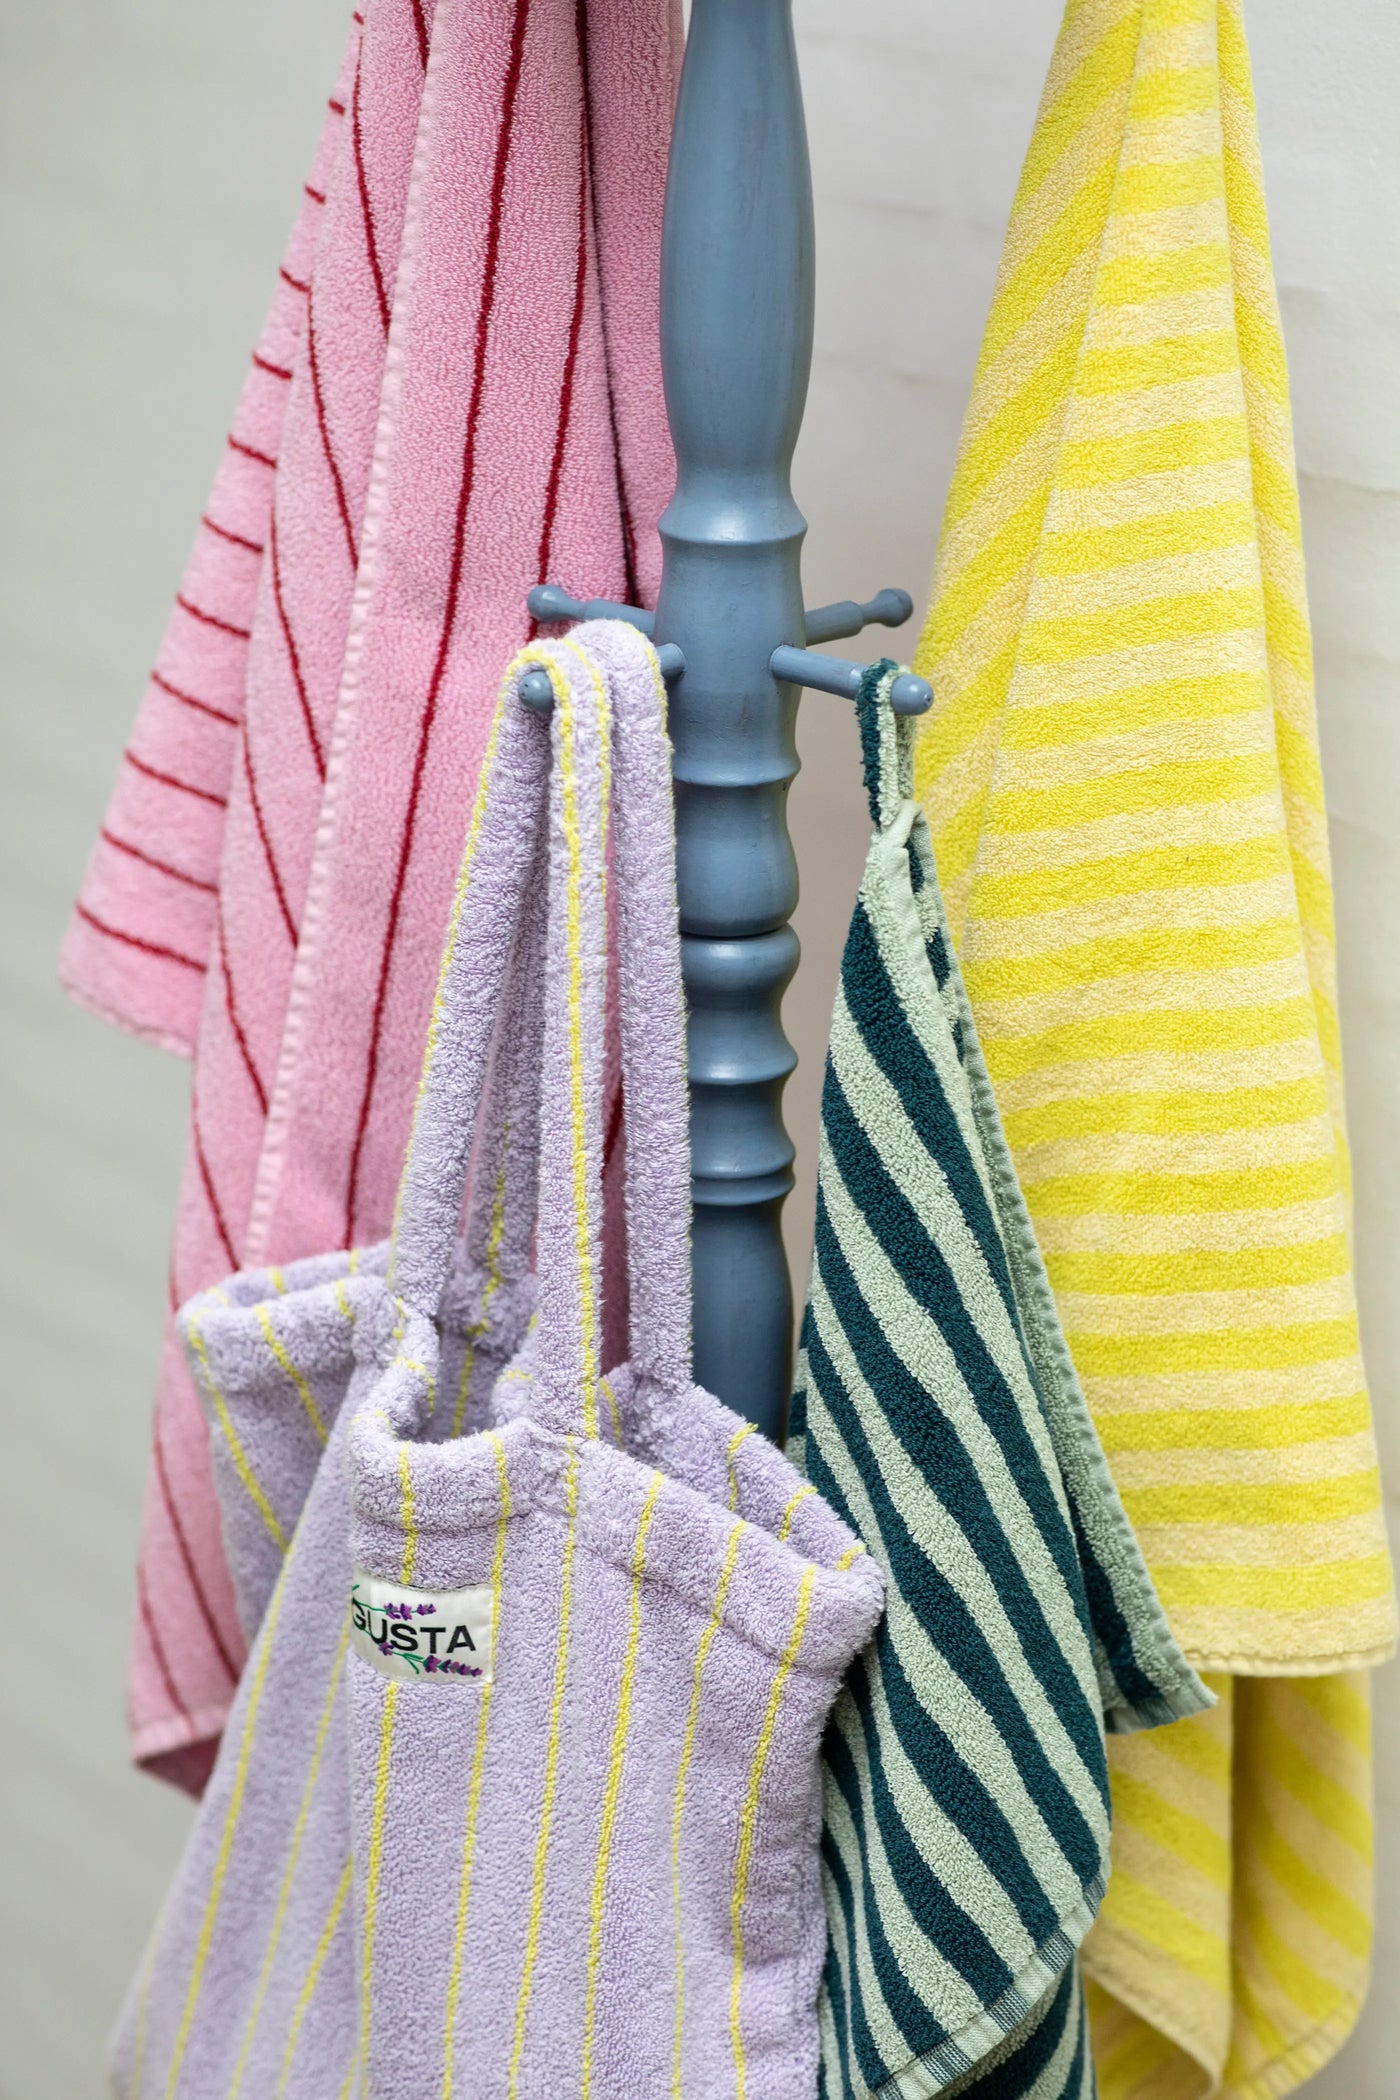 Bongusta Naram håndklæde | Pristine & neon yellow (wide stripe) - 2 størrelser Bongusta